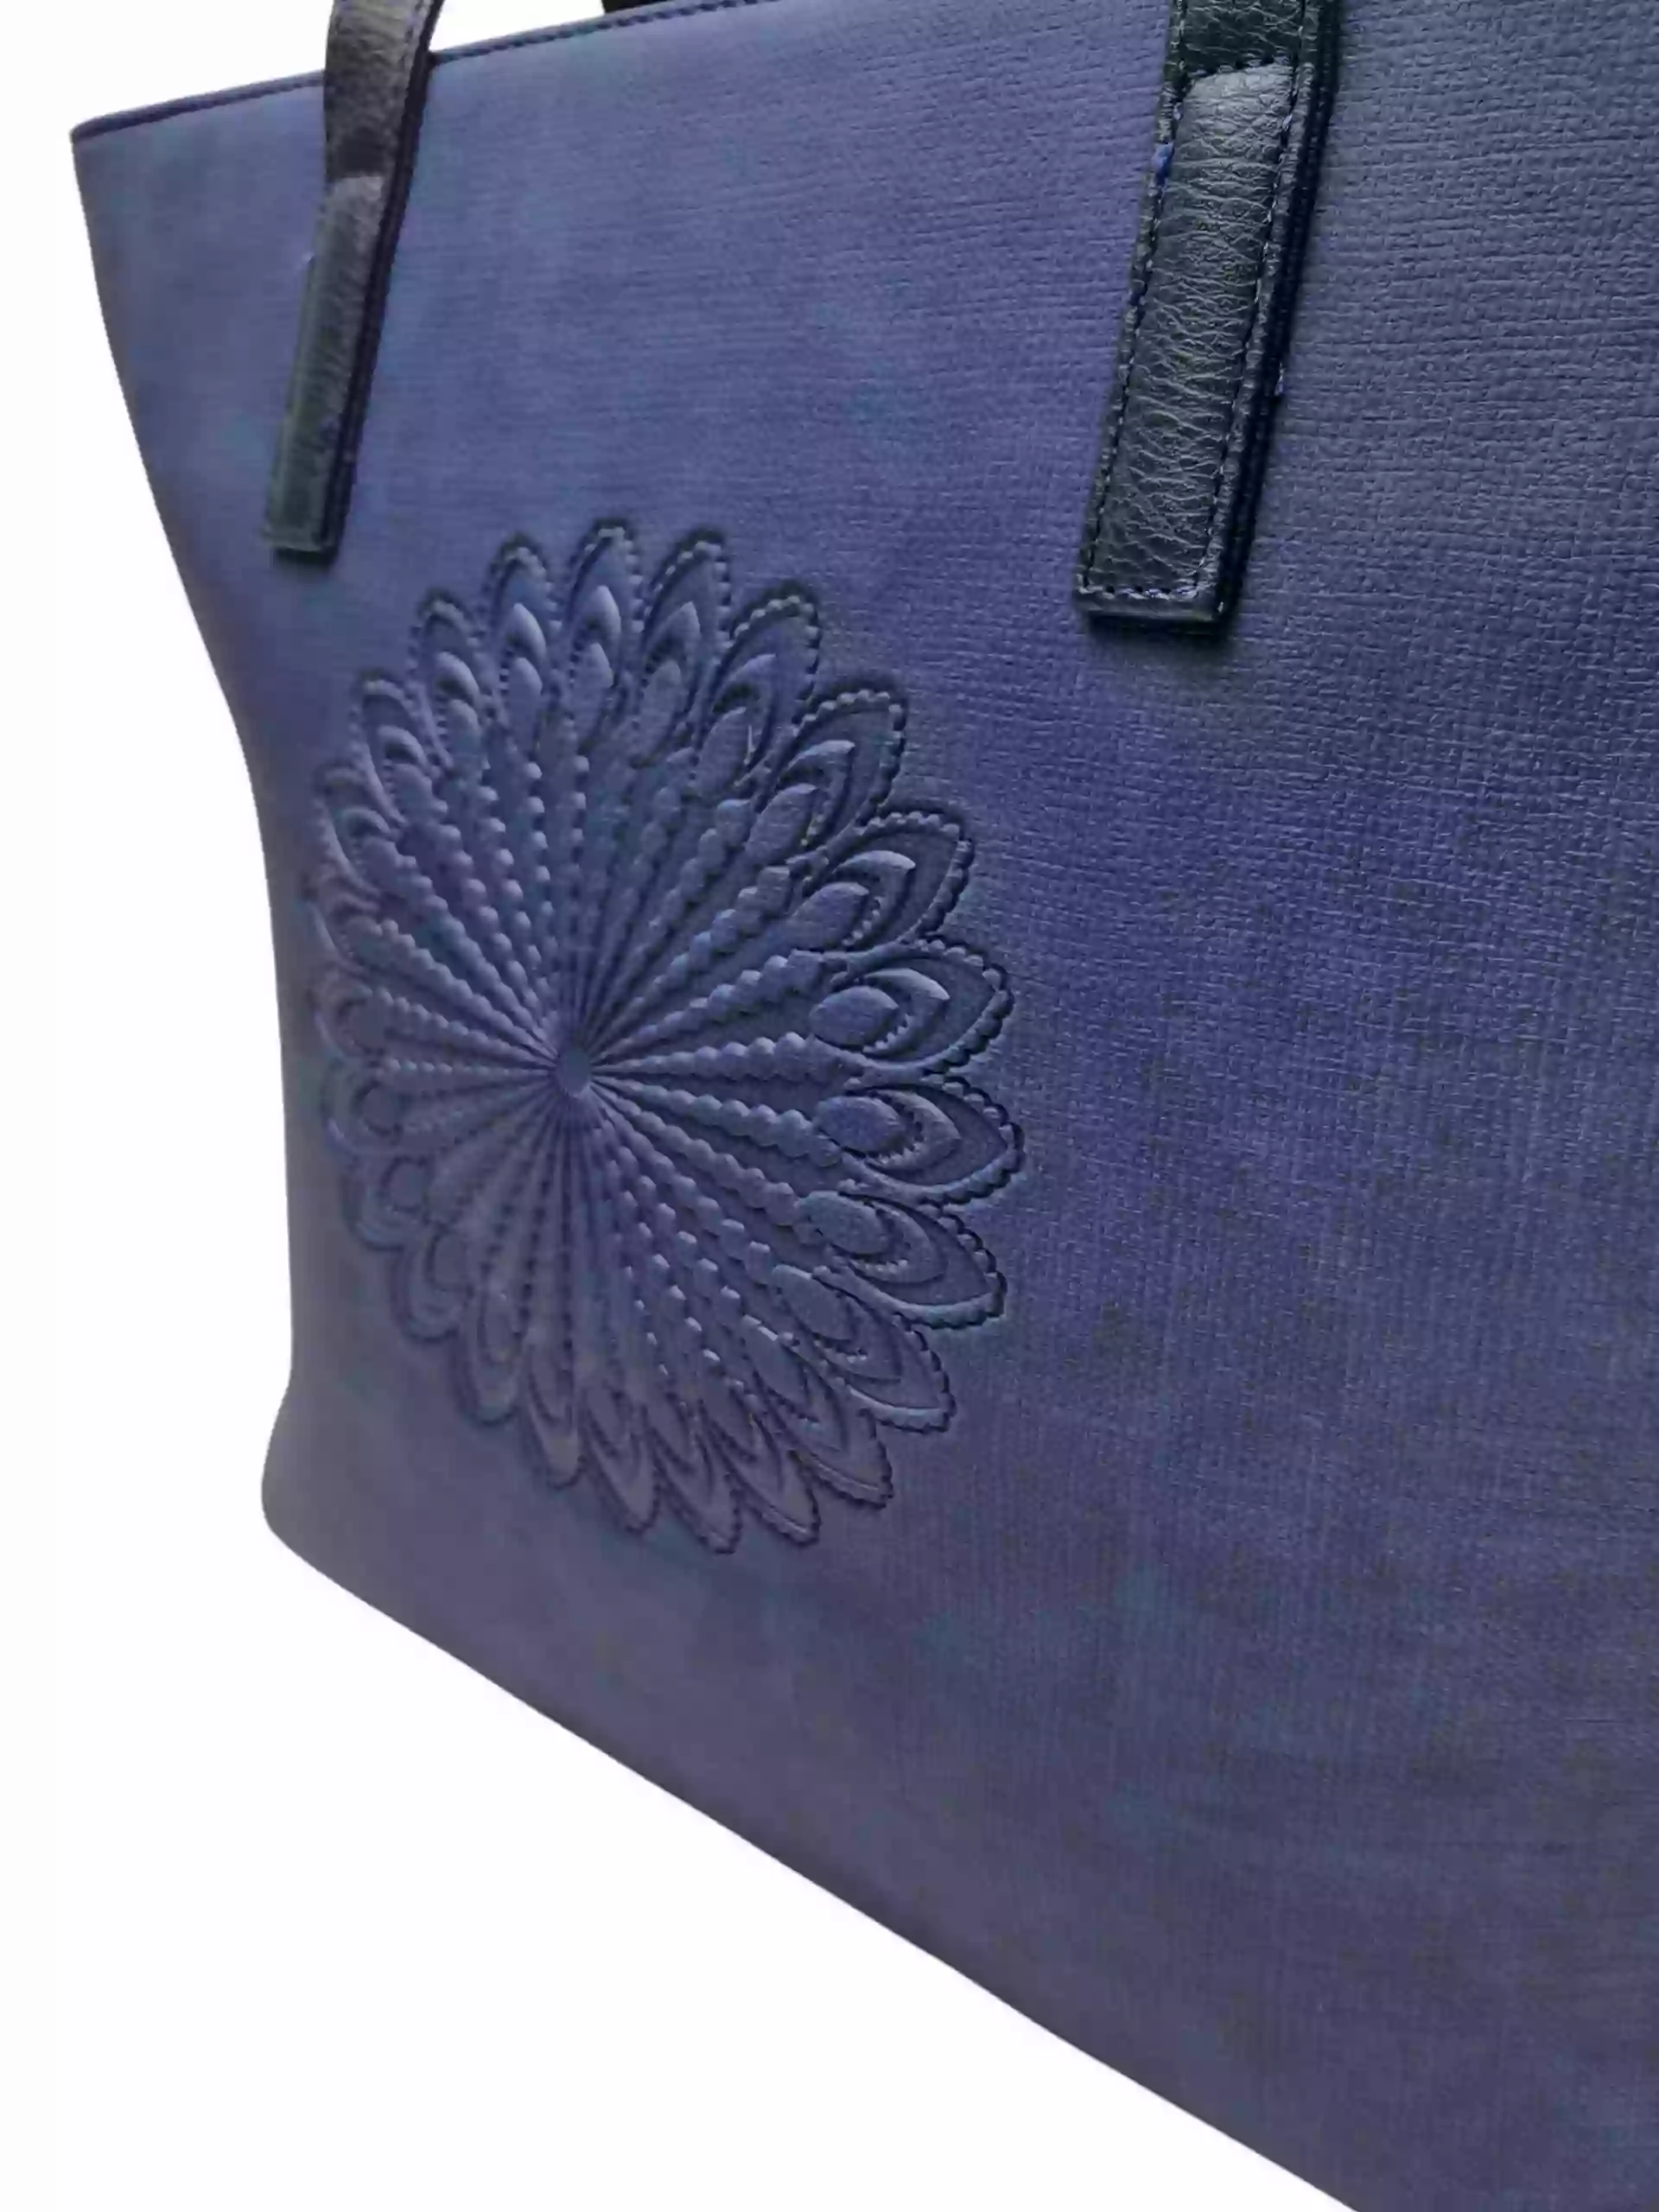 Středně modrá dámská kabelka přes rameno s texturou, Tapple, H17409, detail zadní strany kabelky přes rameno